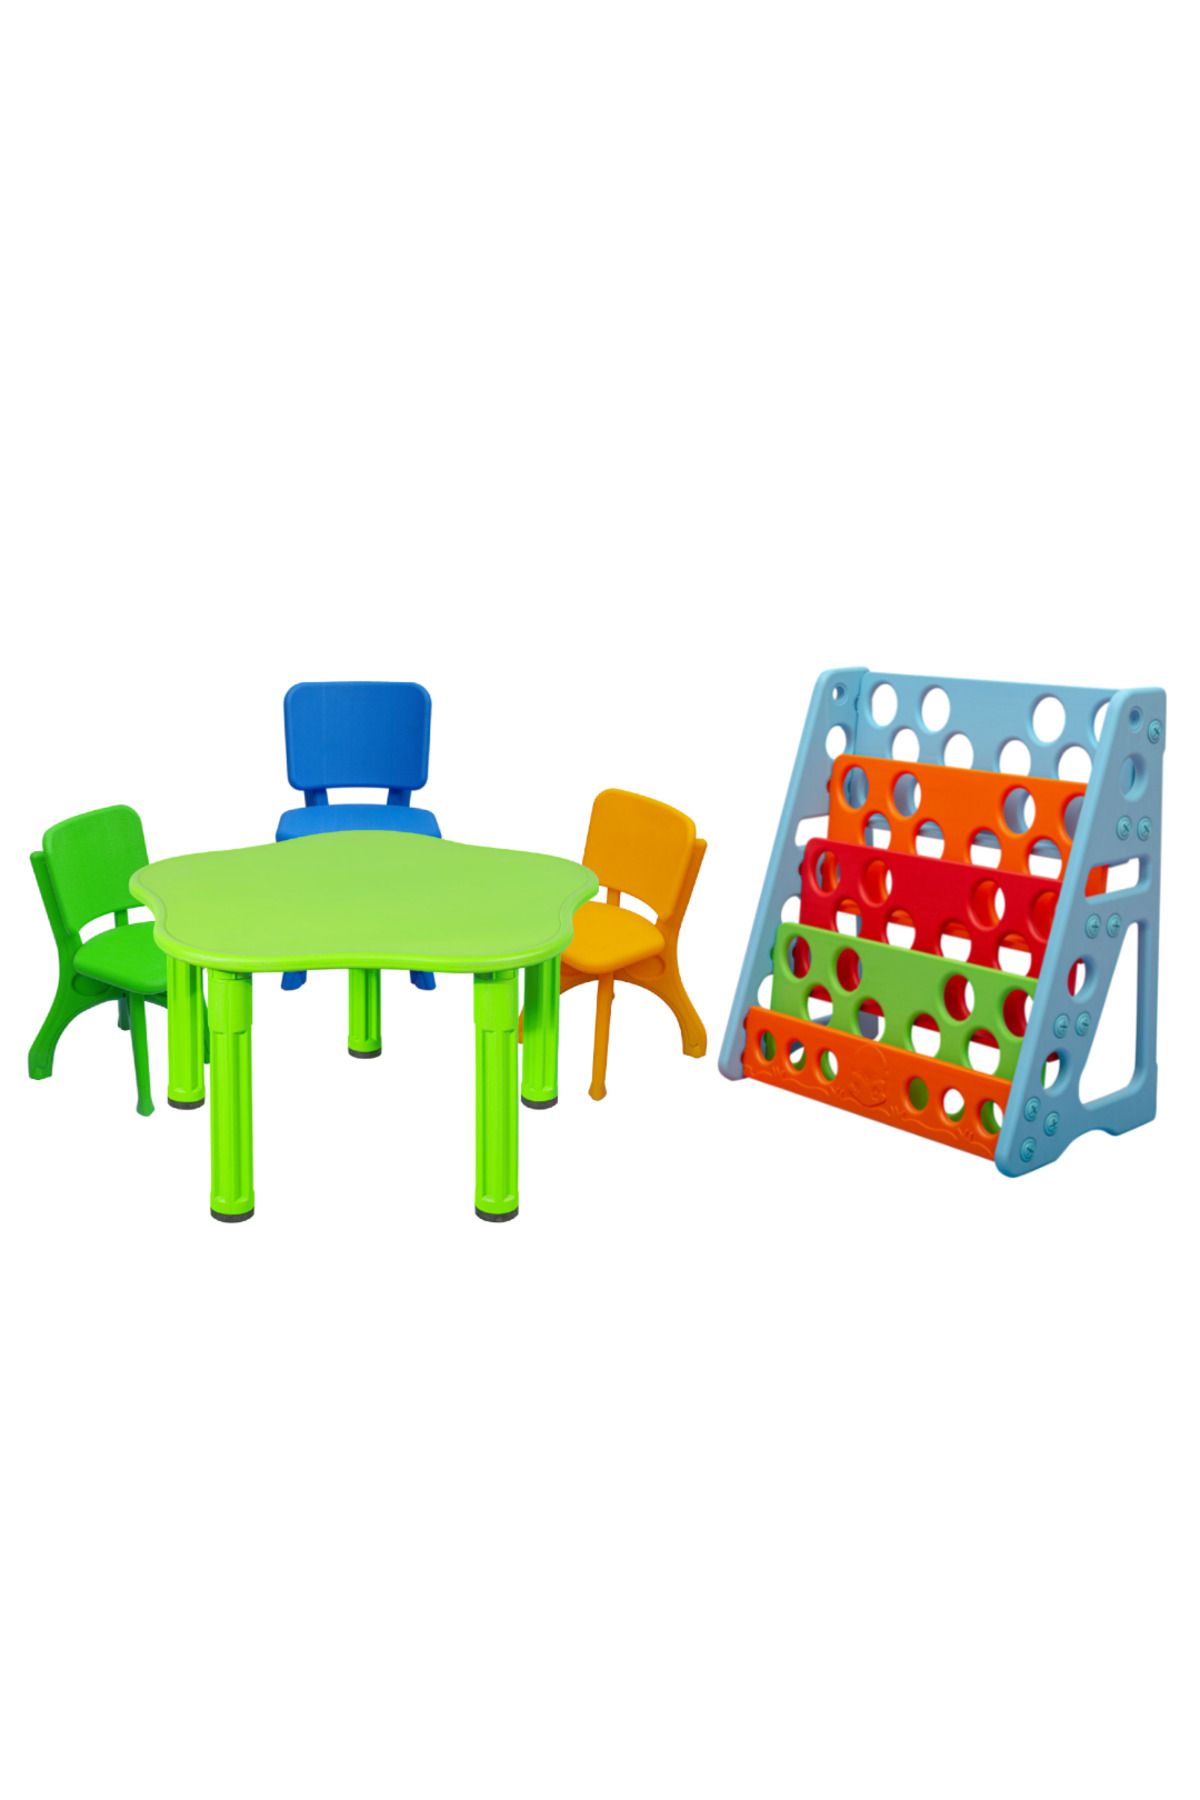 ÇIRAK Çocuk Aktivite Masası - Renkli Sandalyeler ve Renkli Kitaplık - Büyük Masa Set - Anaokulu - Kreş M2